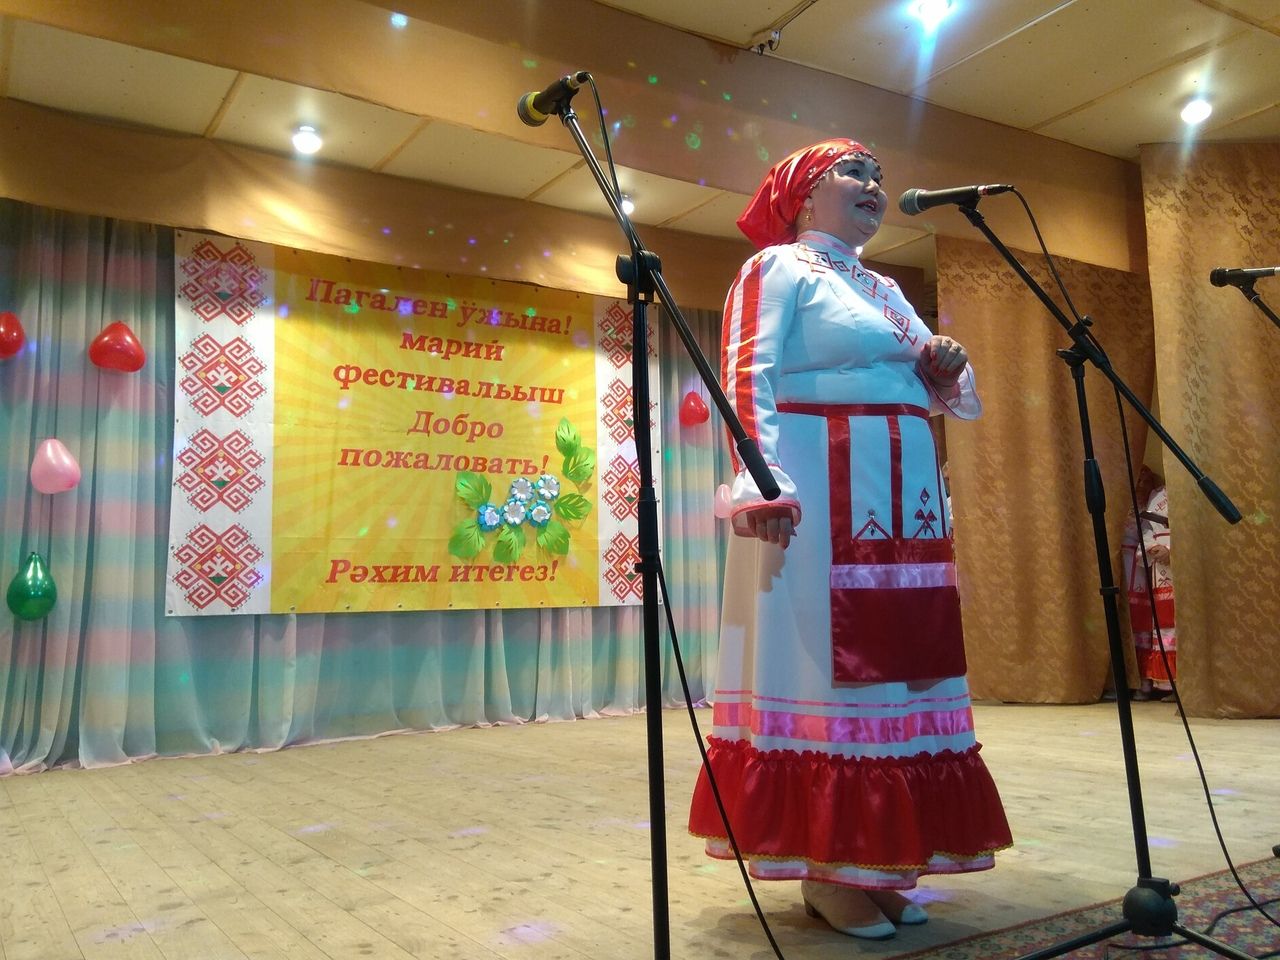 Единение марийского народа: как в Ильнети прошёл фестиваль народного творчества